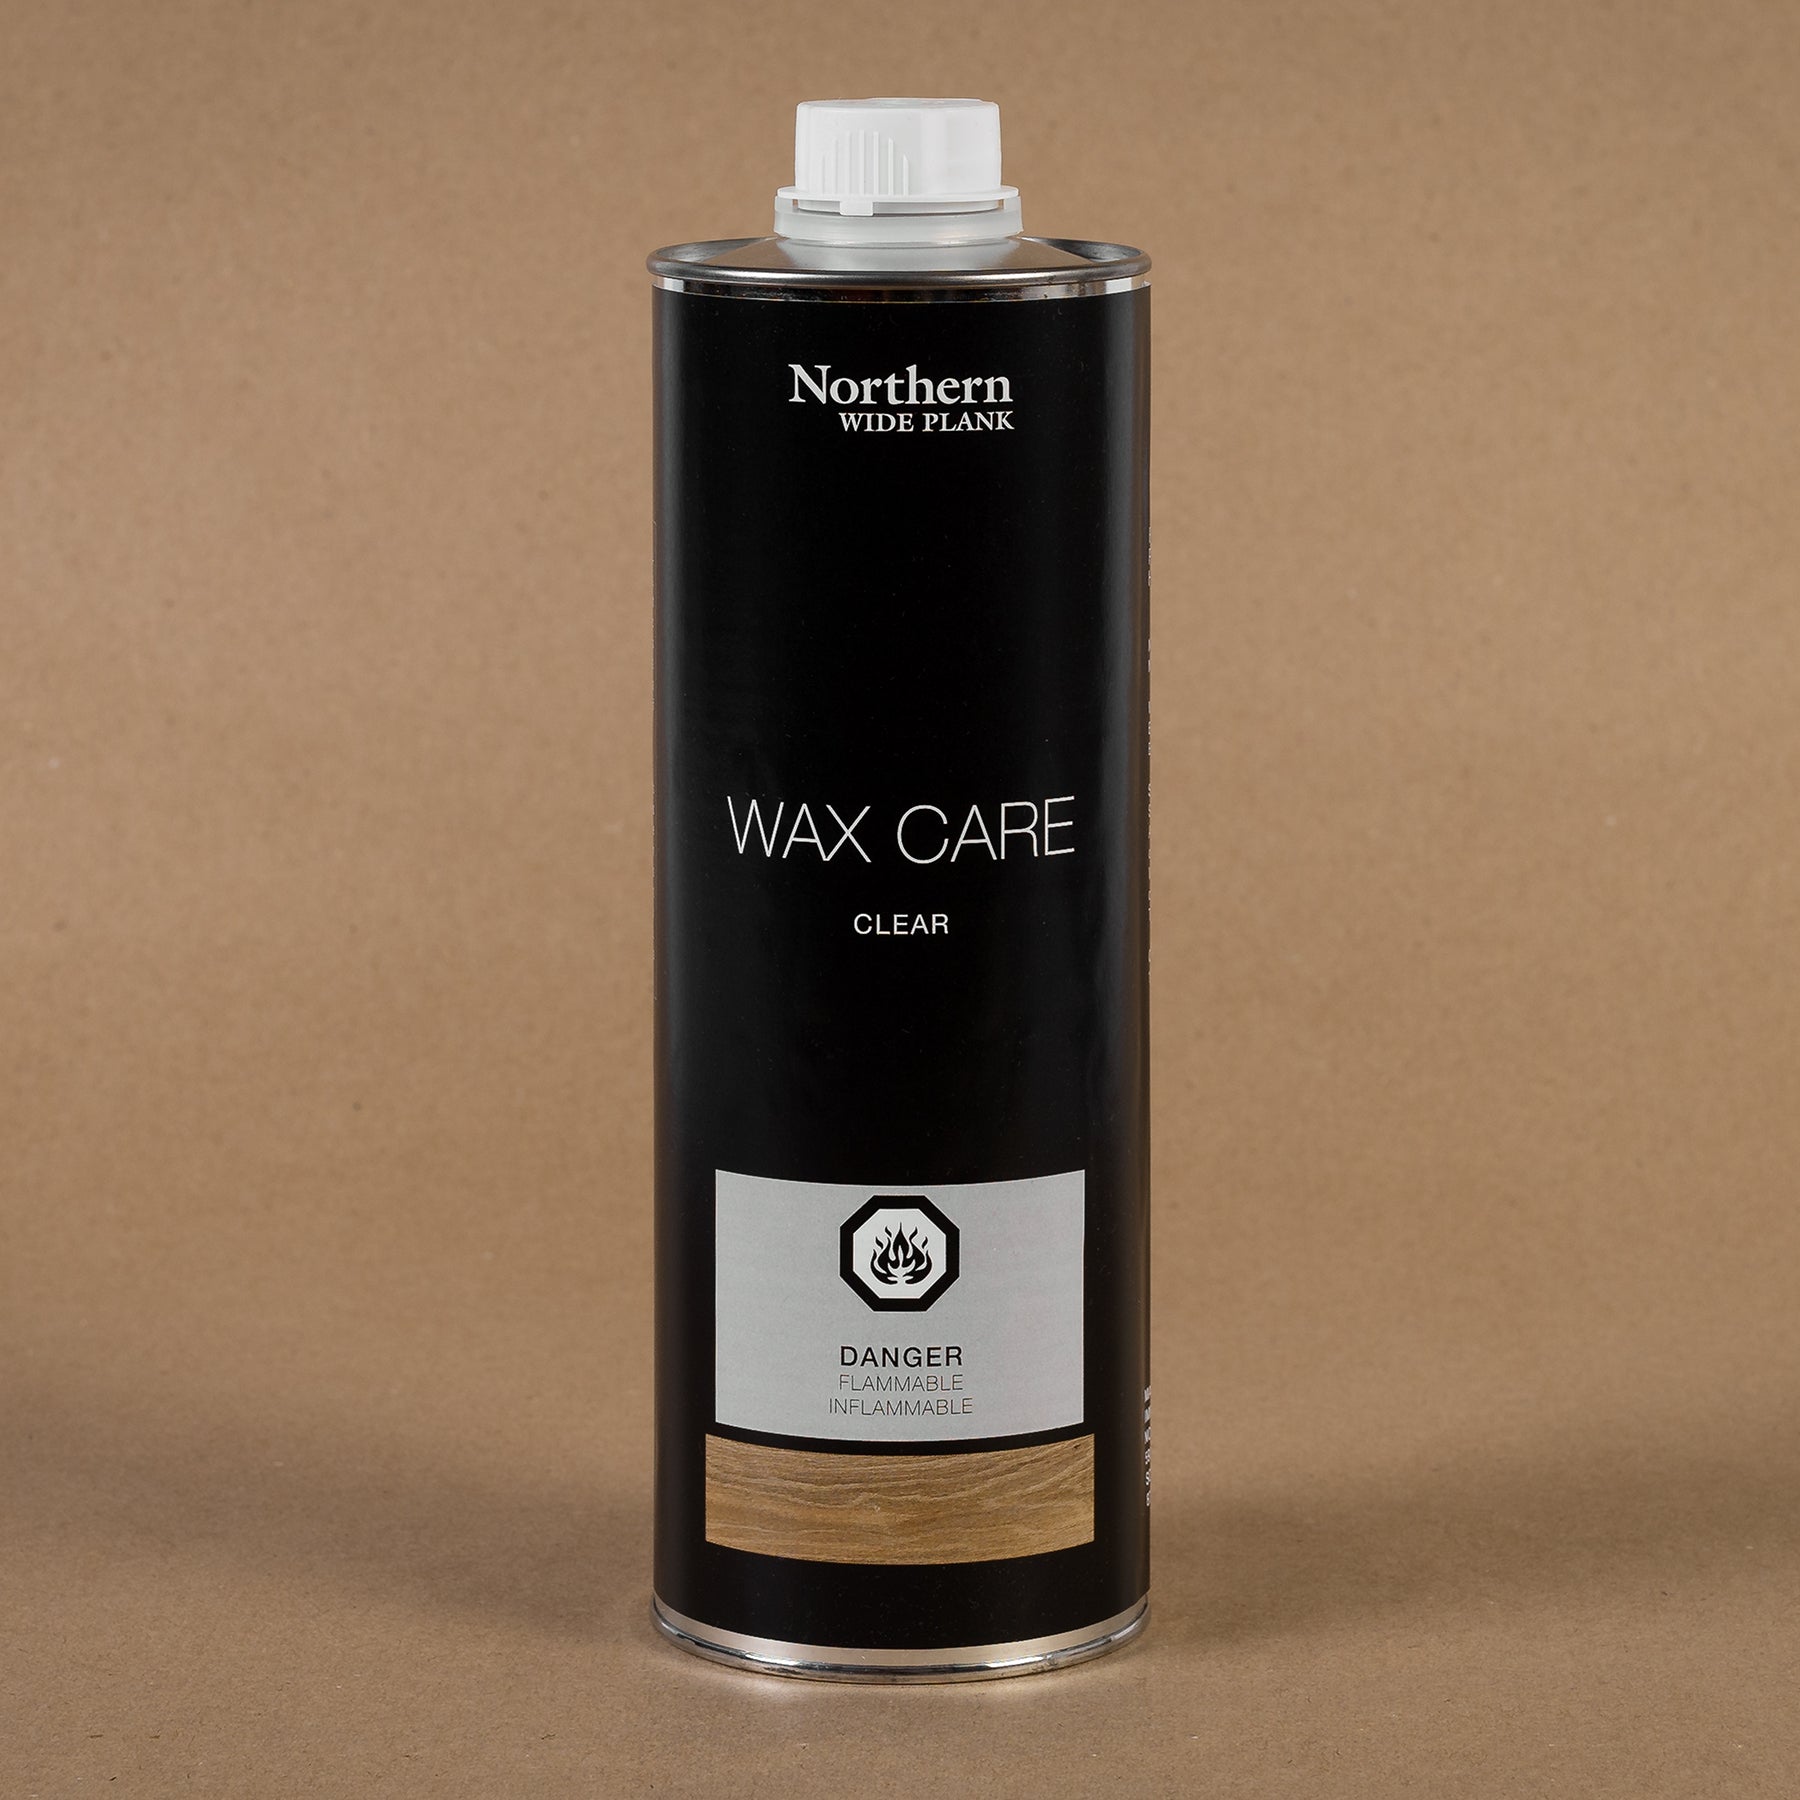 NWP Wax Care